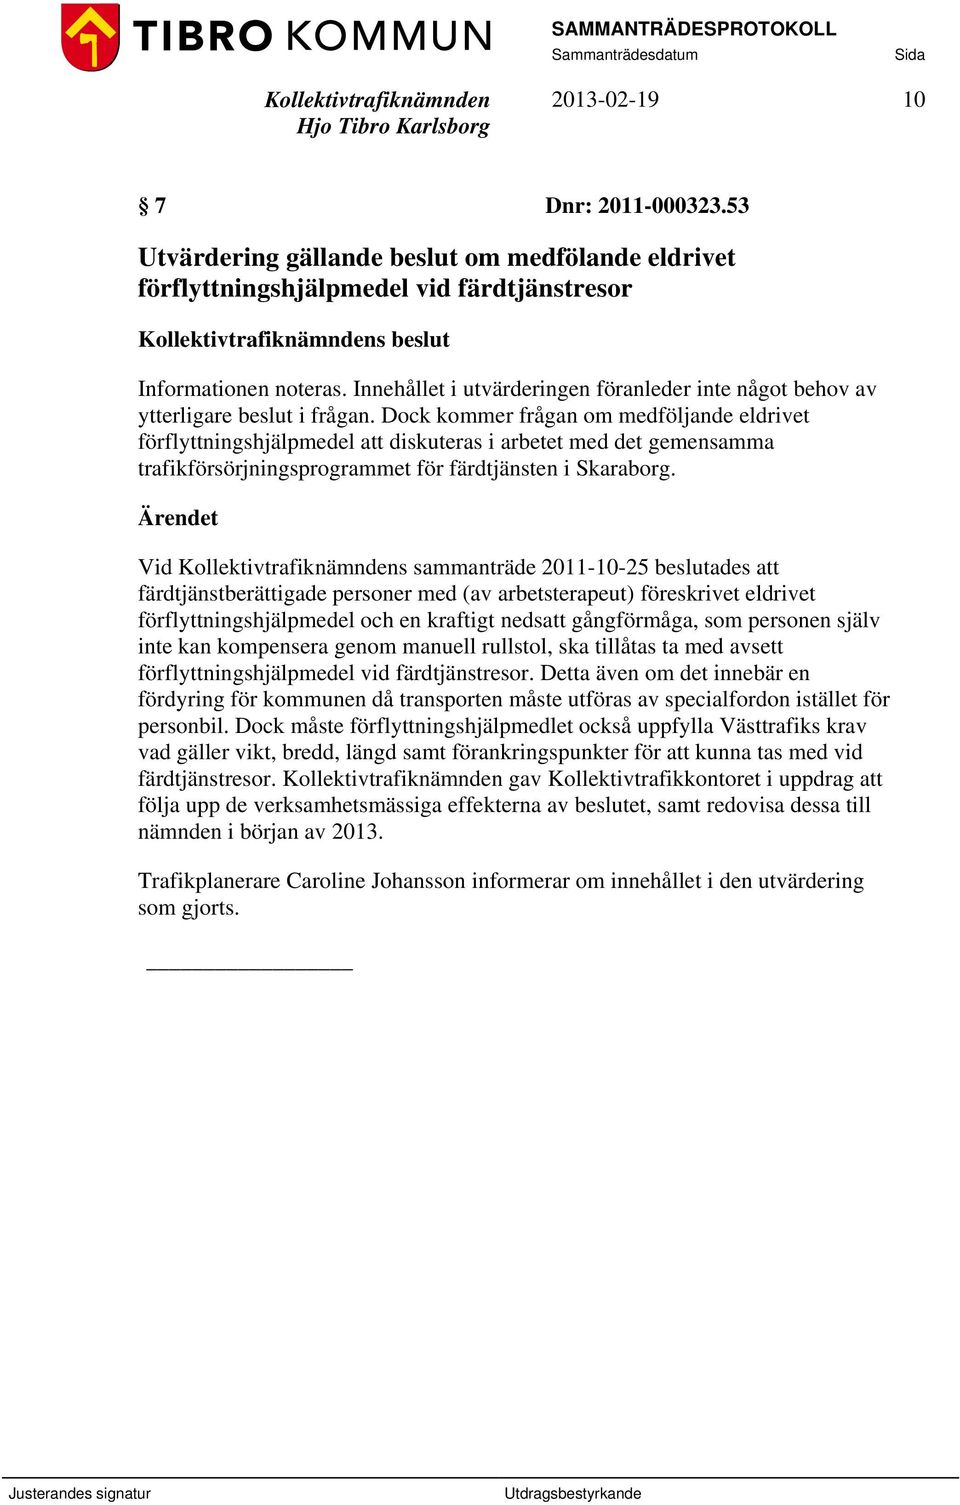 Dock kommer frågan om medföljande eldrivet förflyttningshjälpmedel att diskuteras i arbetet med det gemensamma trafikförsörjningsprogrammet för färdtjänsten i Skaraborg.